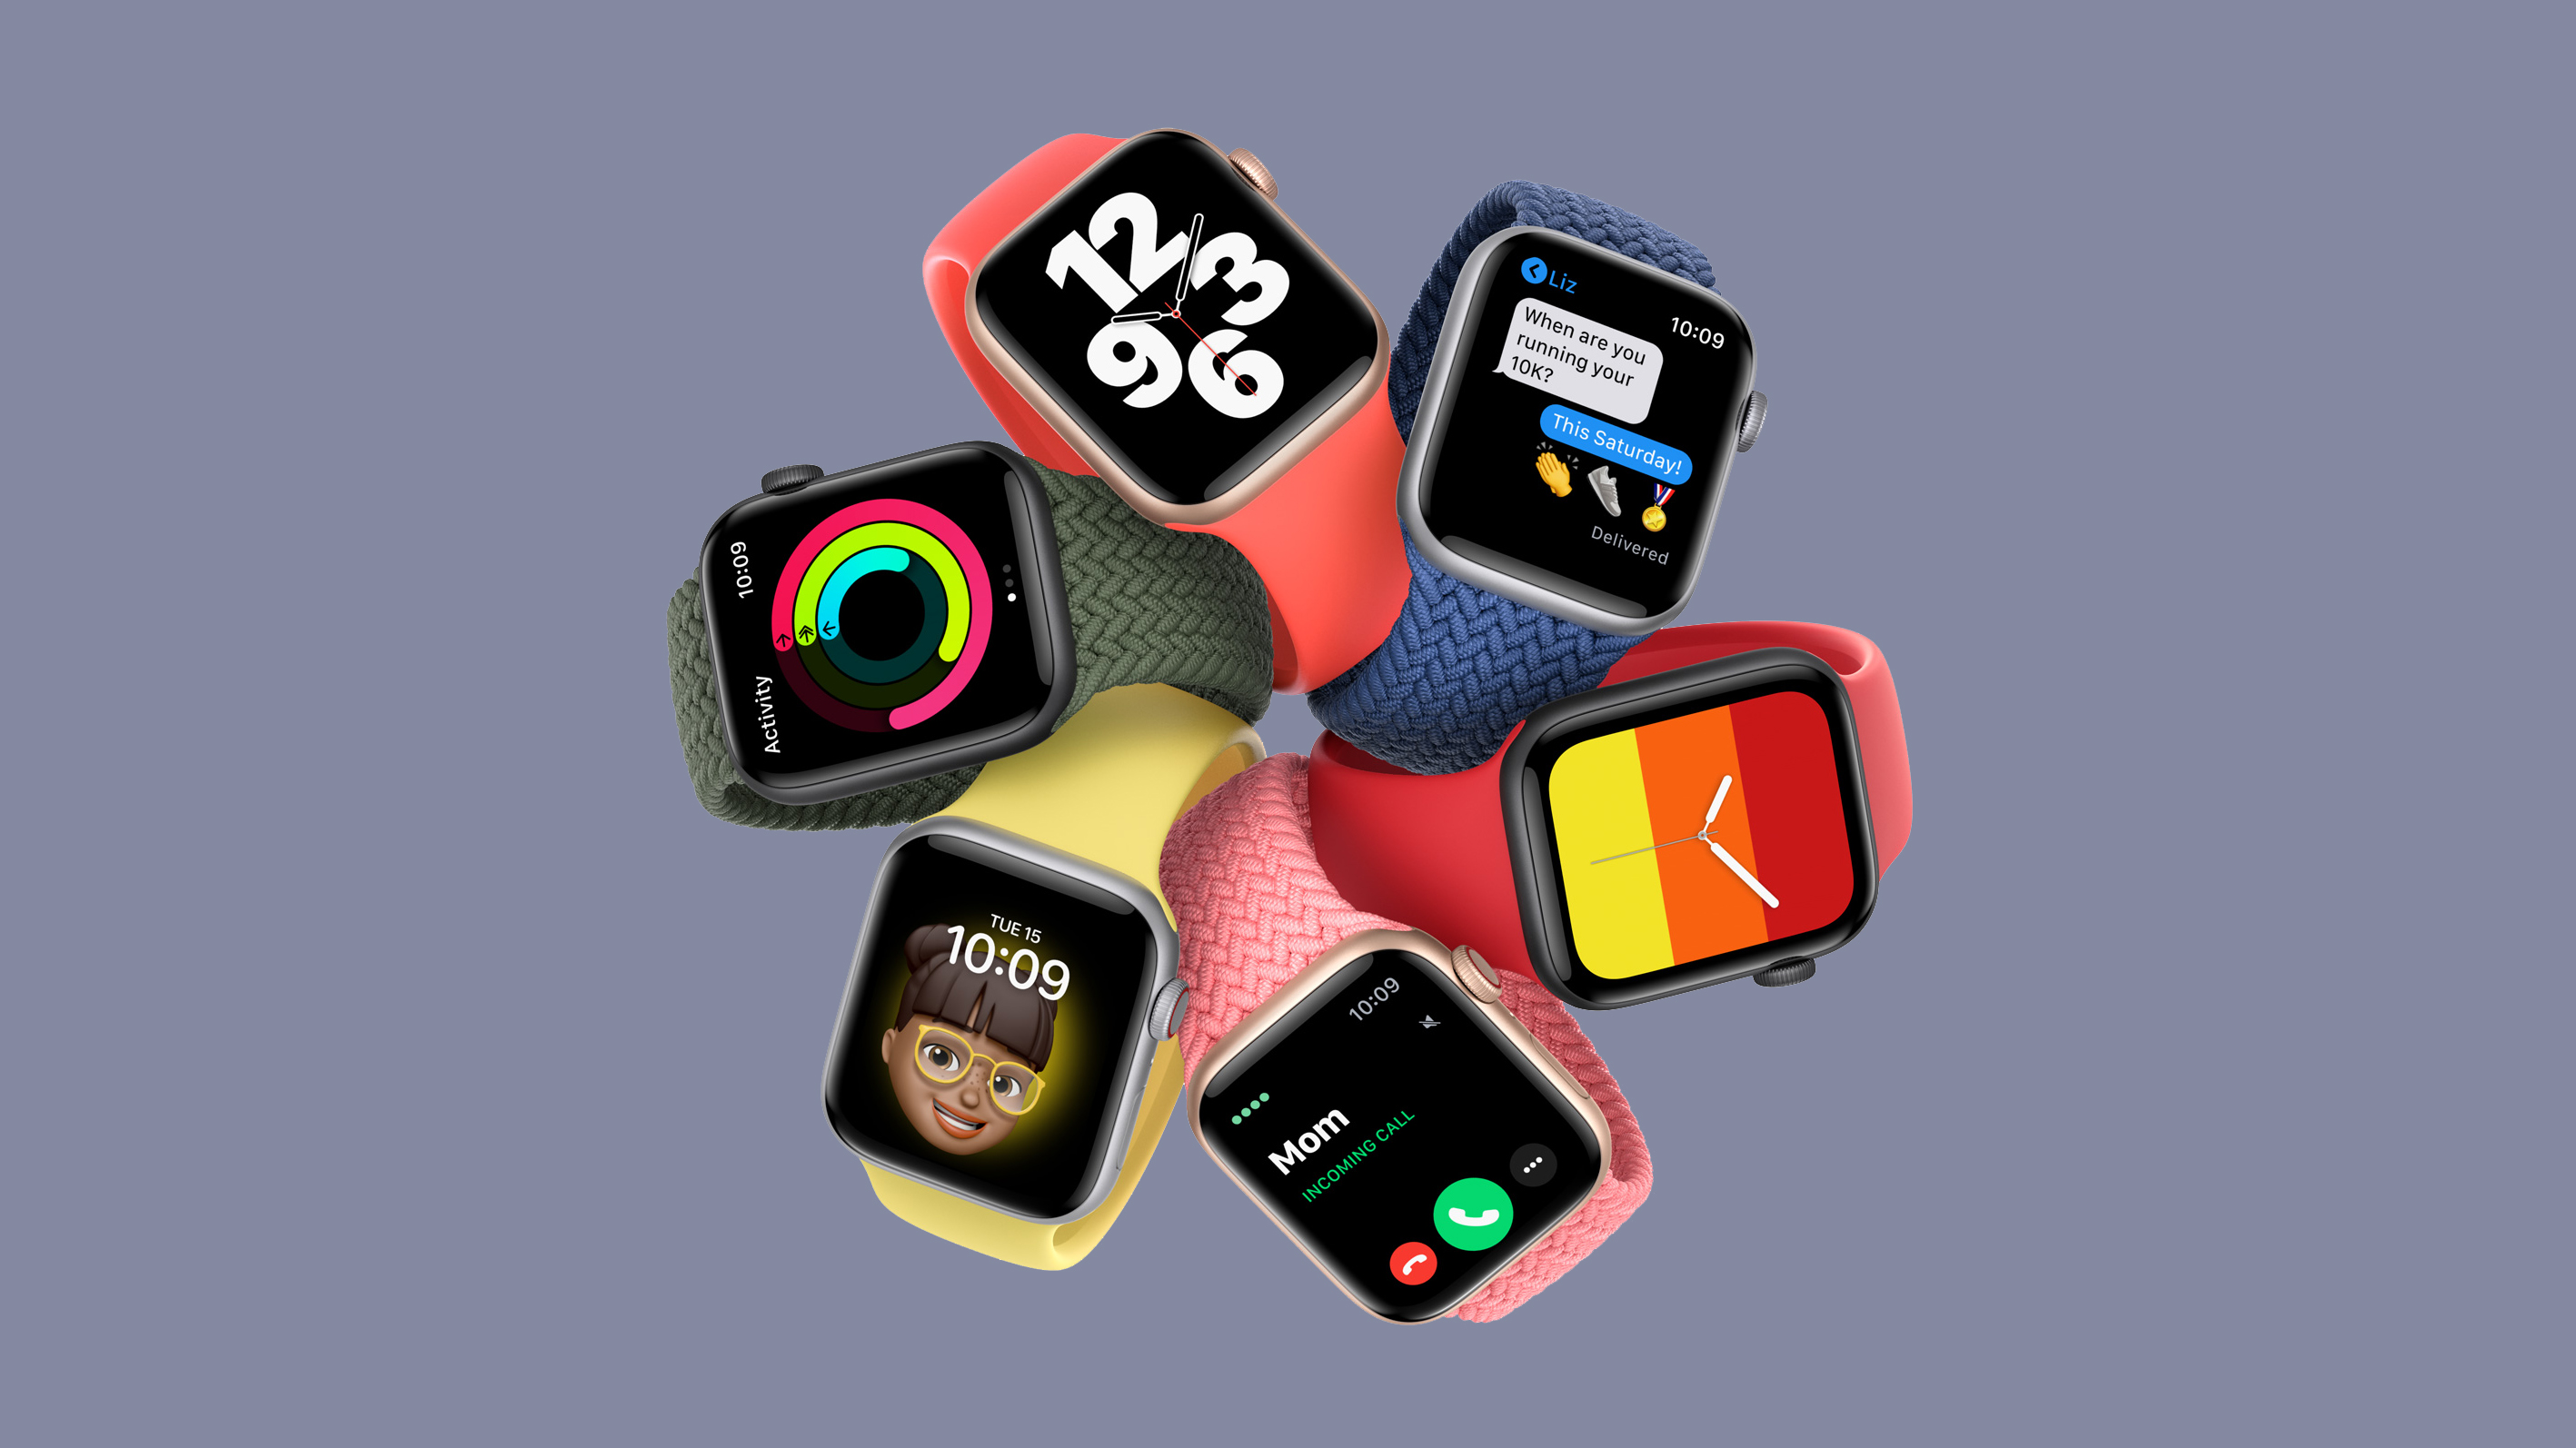 الأخبار 16 سبتمبر 2020 Apple Watch سراج الدين: هذا ما يمكن أن تتوقعه من هذه الساعة الذكية ذات الأسعار المعقولة